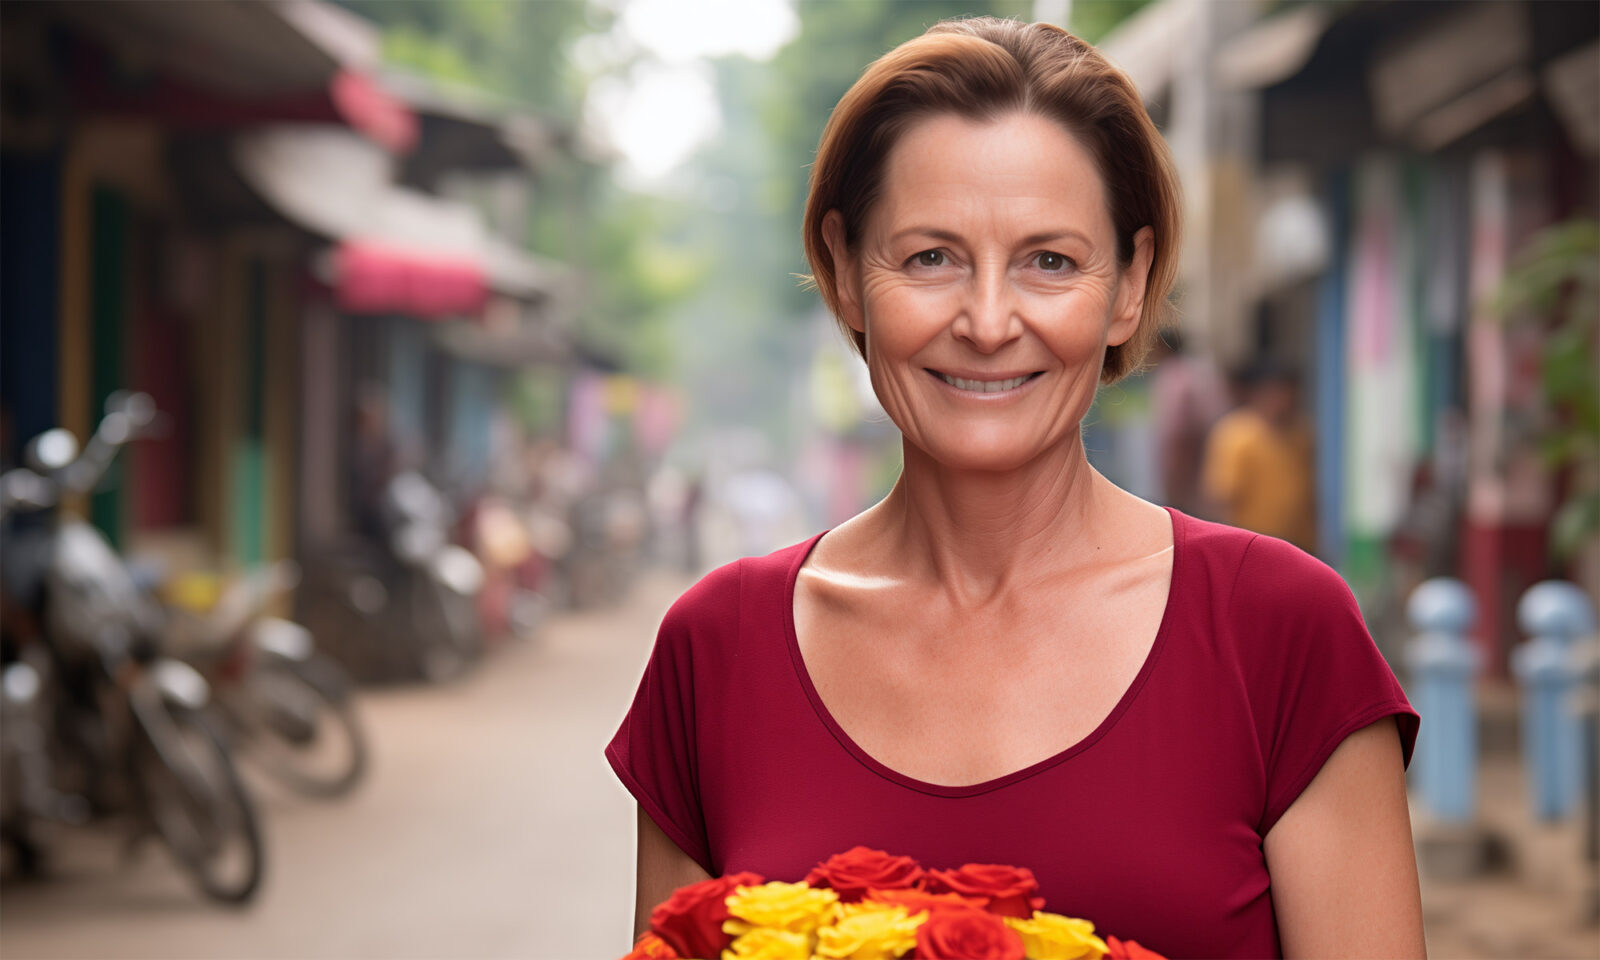 Književnica Louise Doughty otkriva svoju nevjerojatnu životnu priču i avanturu na Baliju nakon šezdesete. Iskrena ispovijest o sreći, samoći i novom početku.